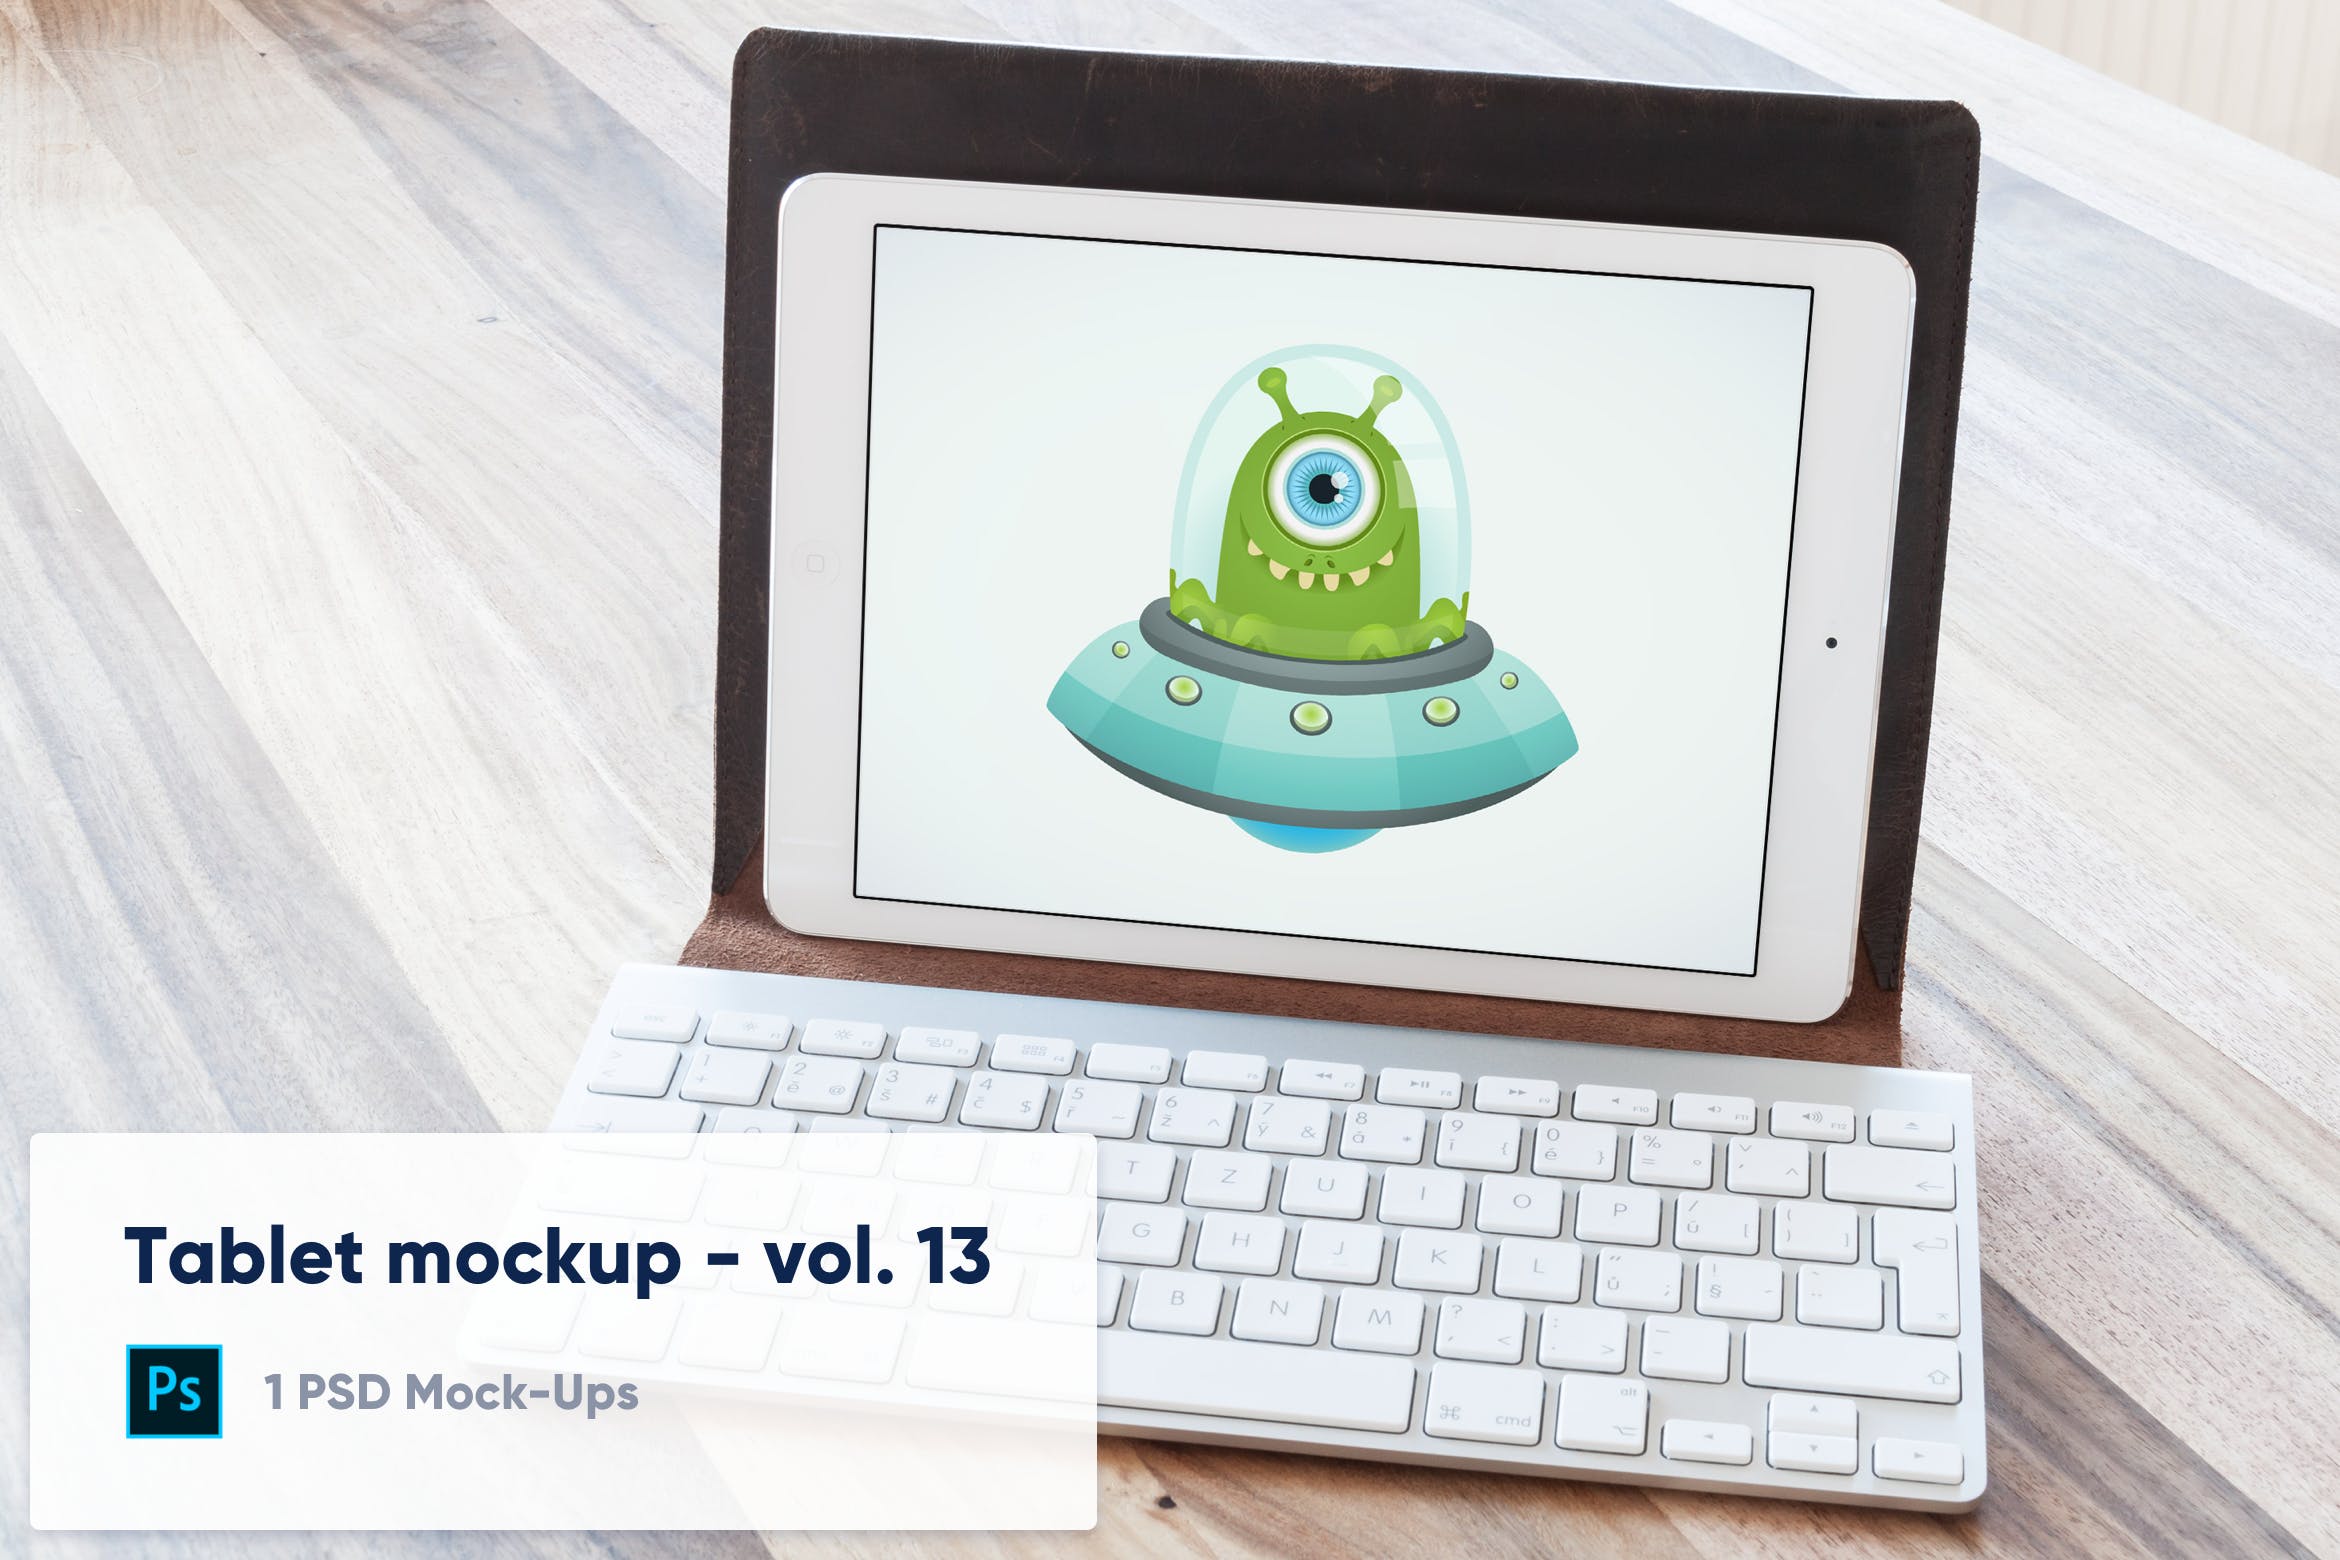 附带键盘套的iPad平板电脑屏幕预览16图库精选样机模板v13 Tablet in Keyboard Case Desk Mockup – Vol. 13插图